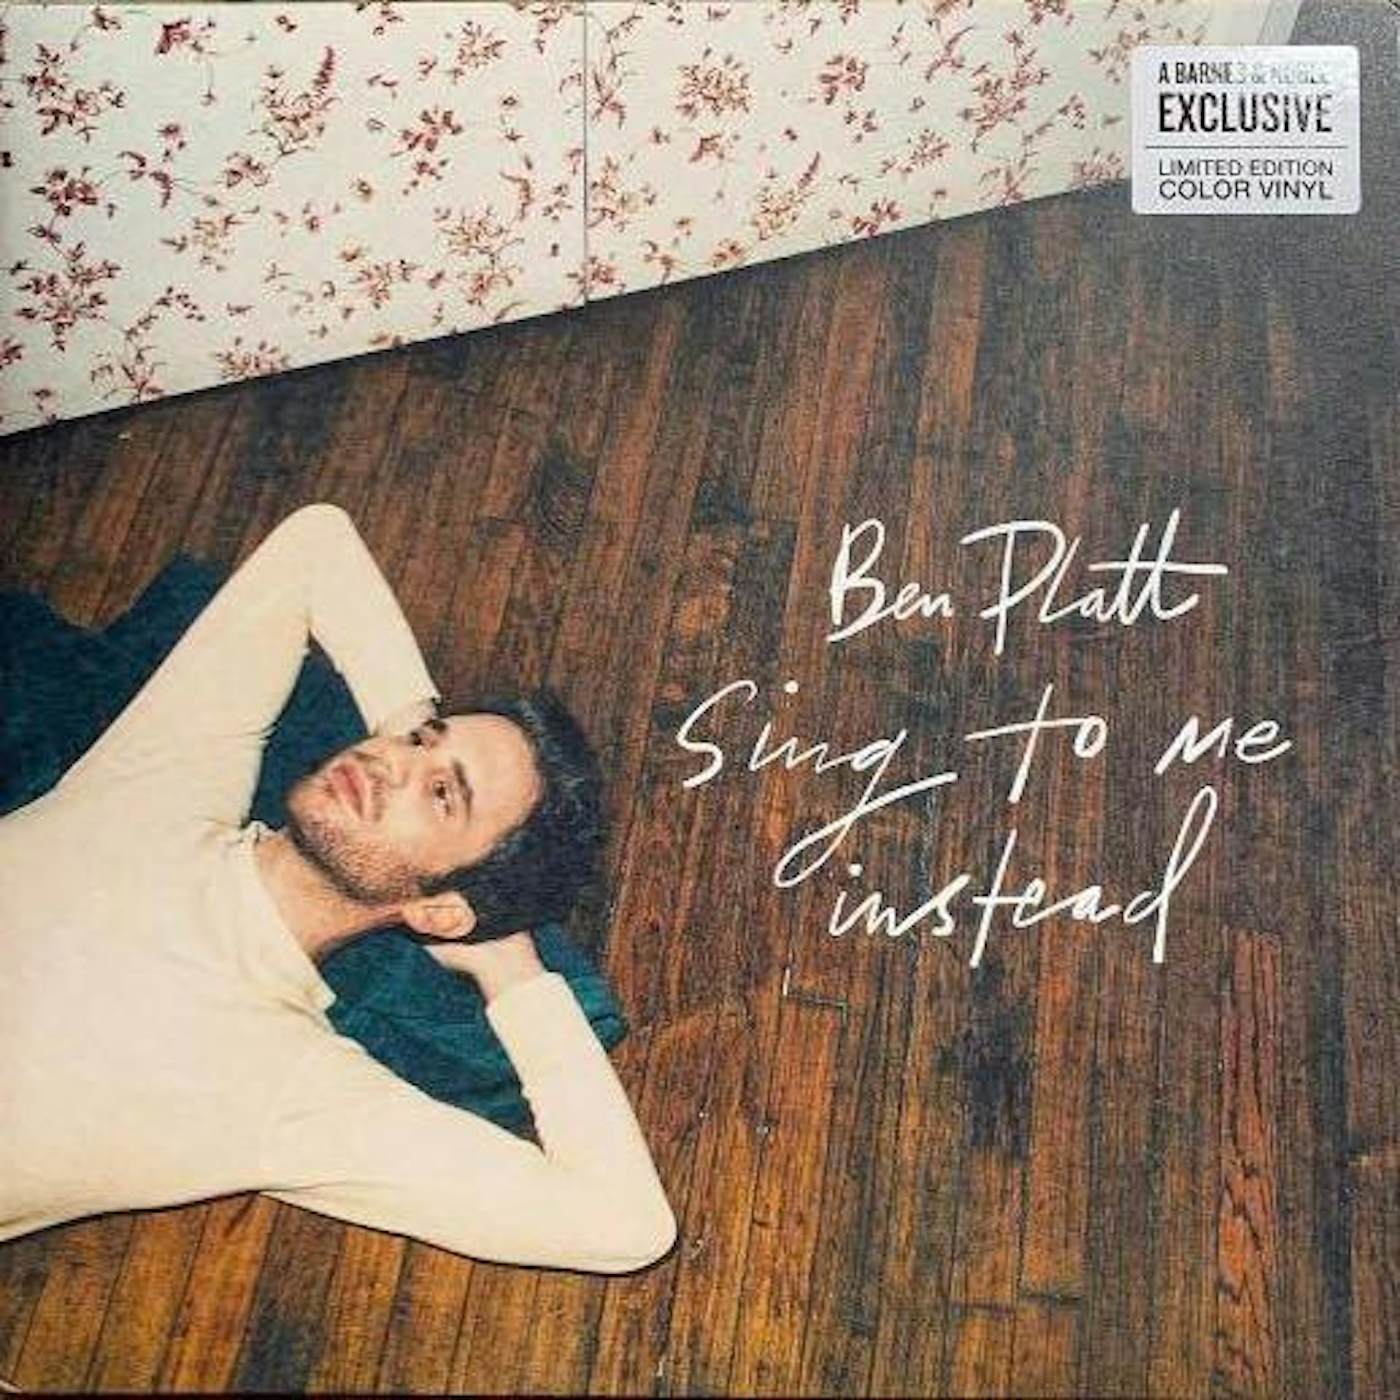 Ben Platt Sing To Me Instead Vinyl Record